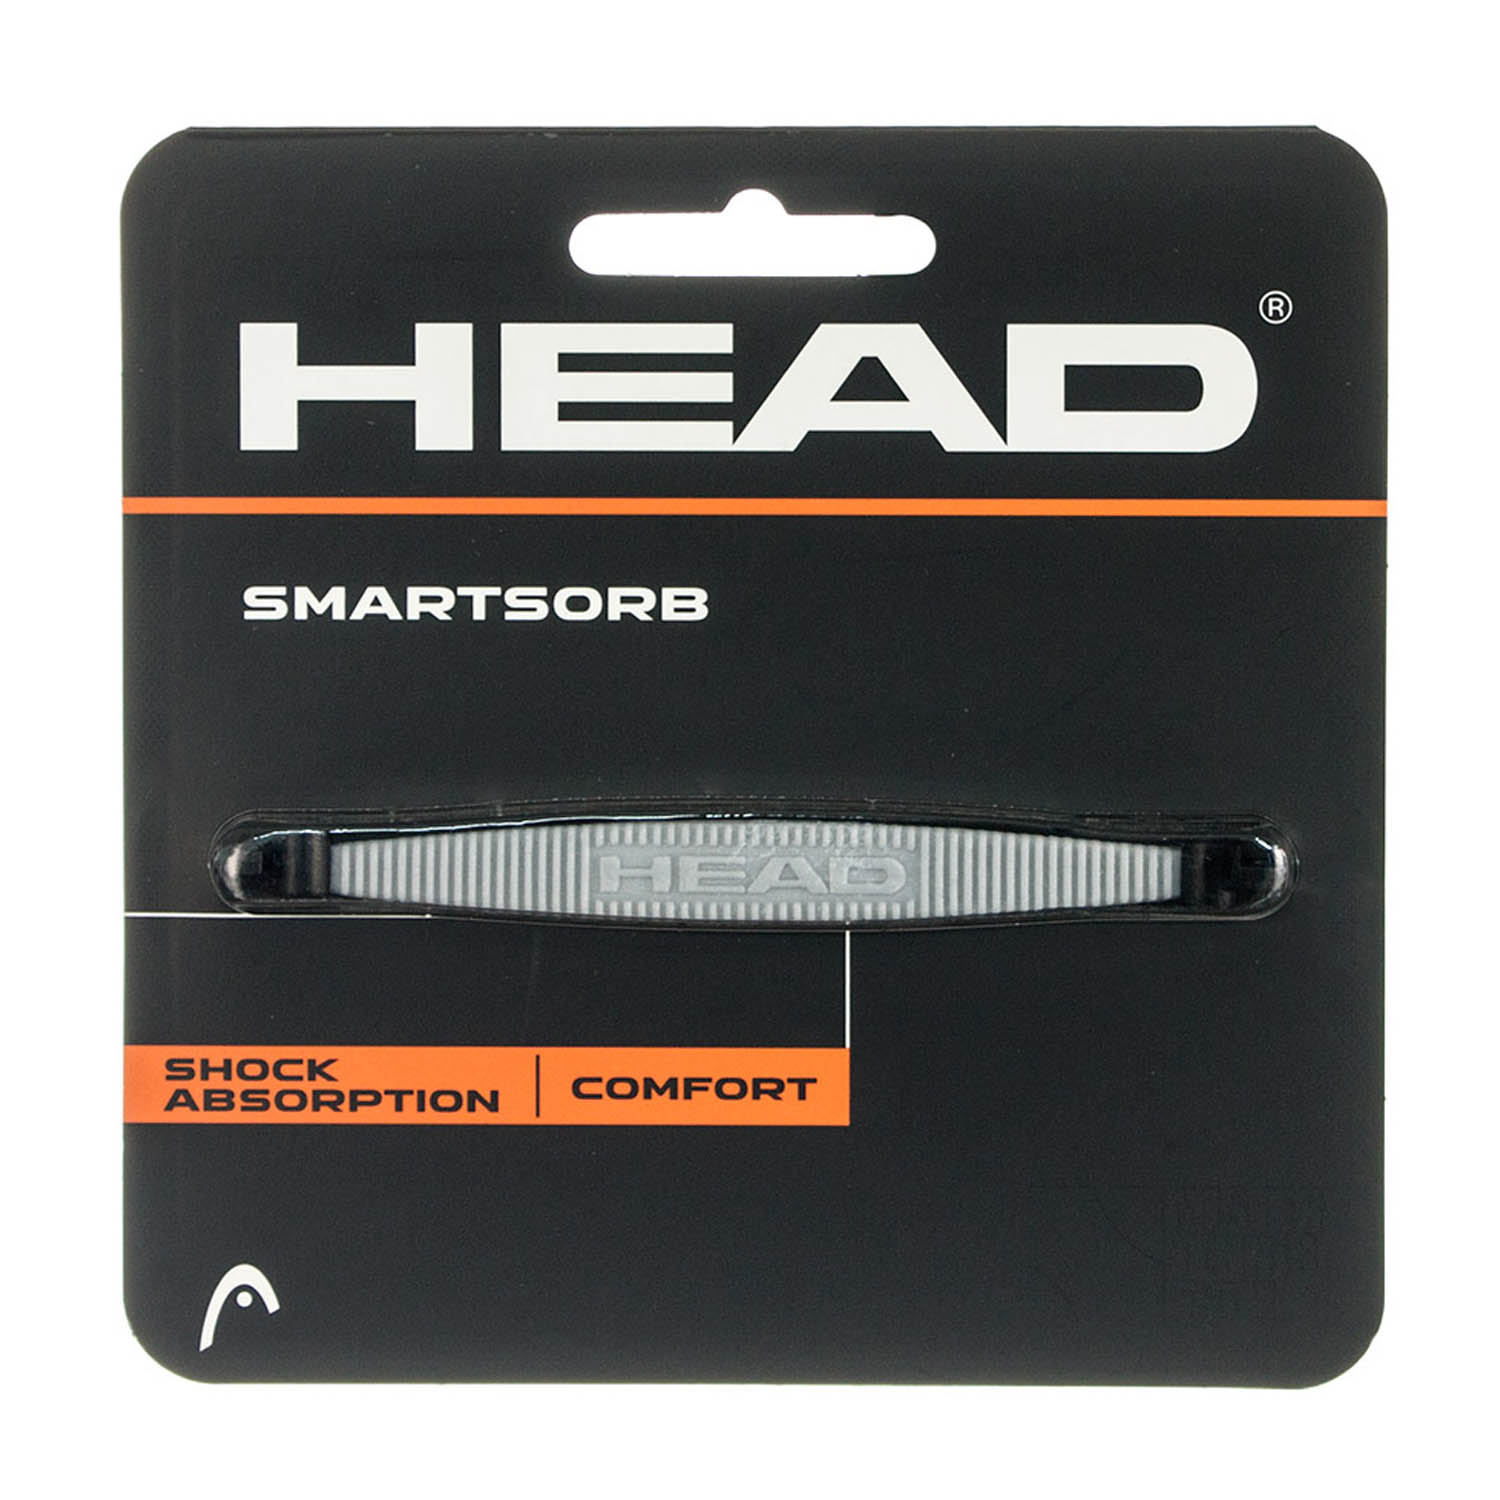 Head SmartSorb - Silver